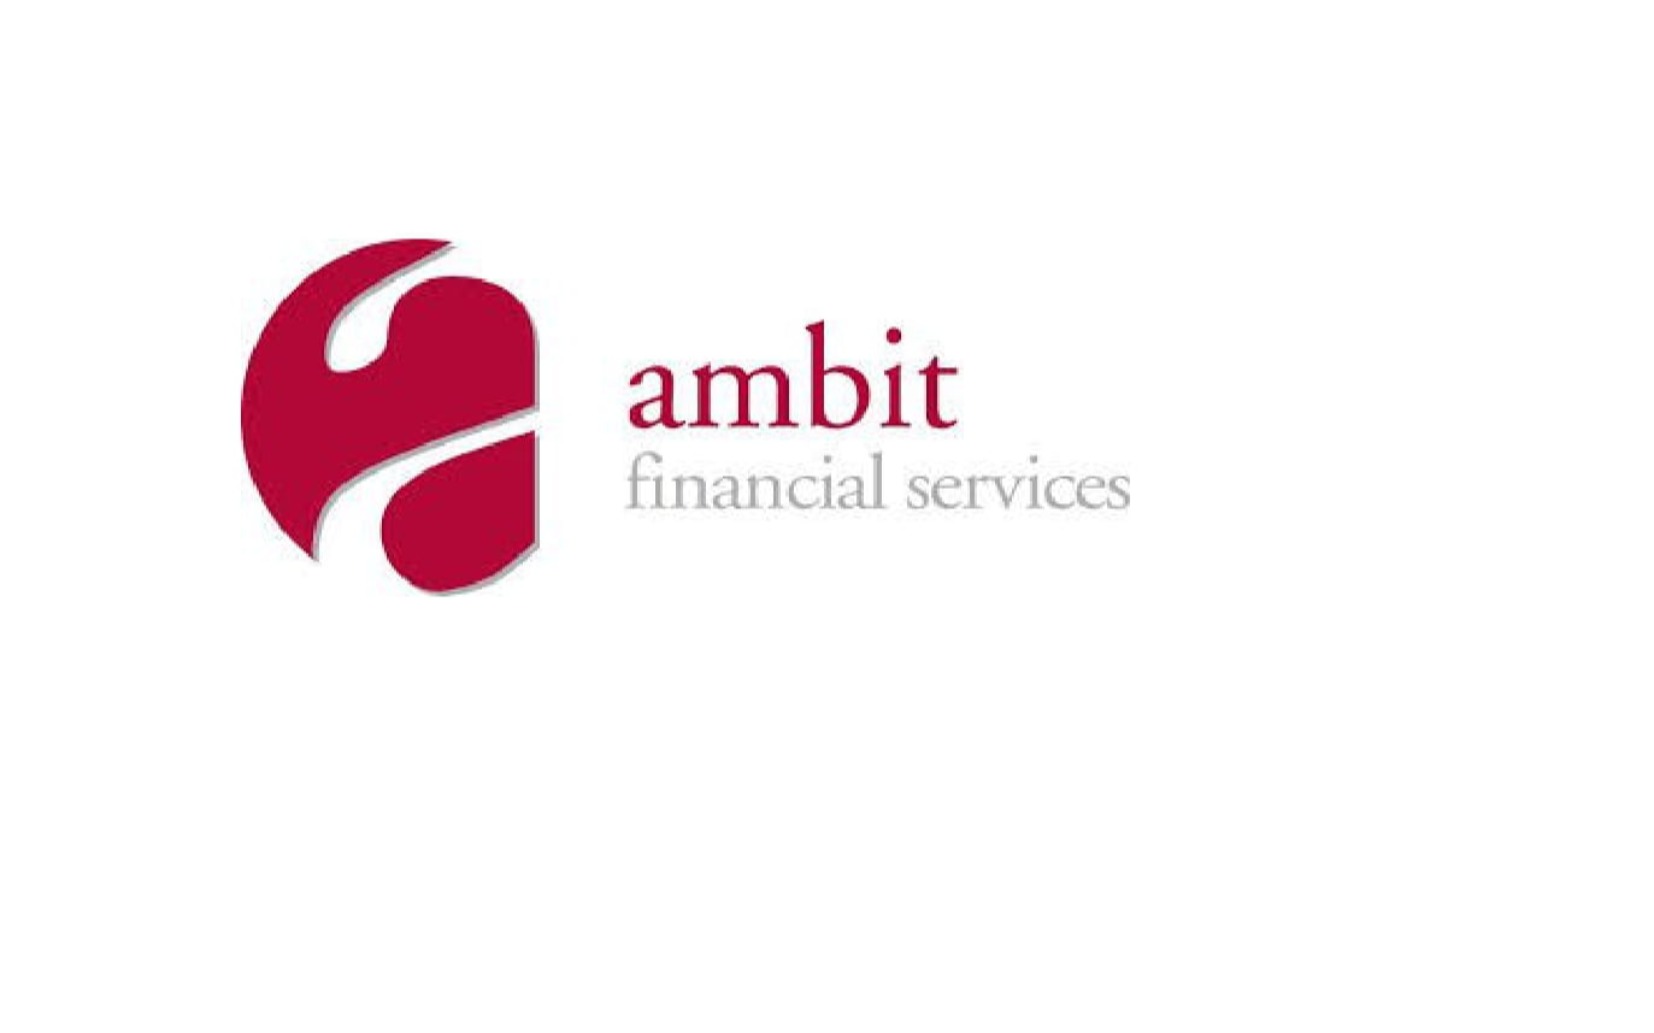 Ambit Financial Services Ltd